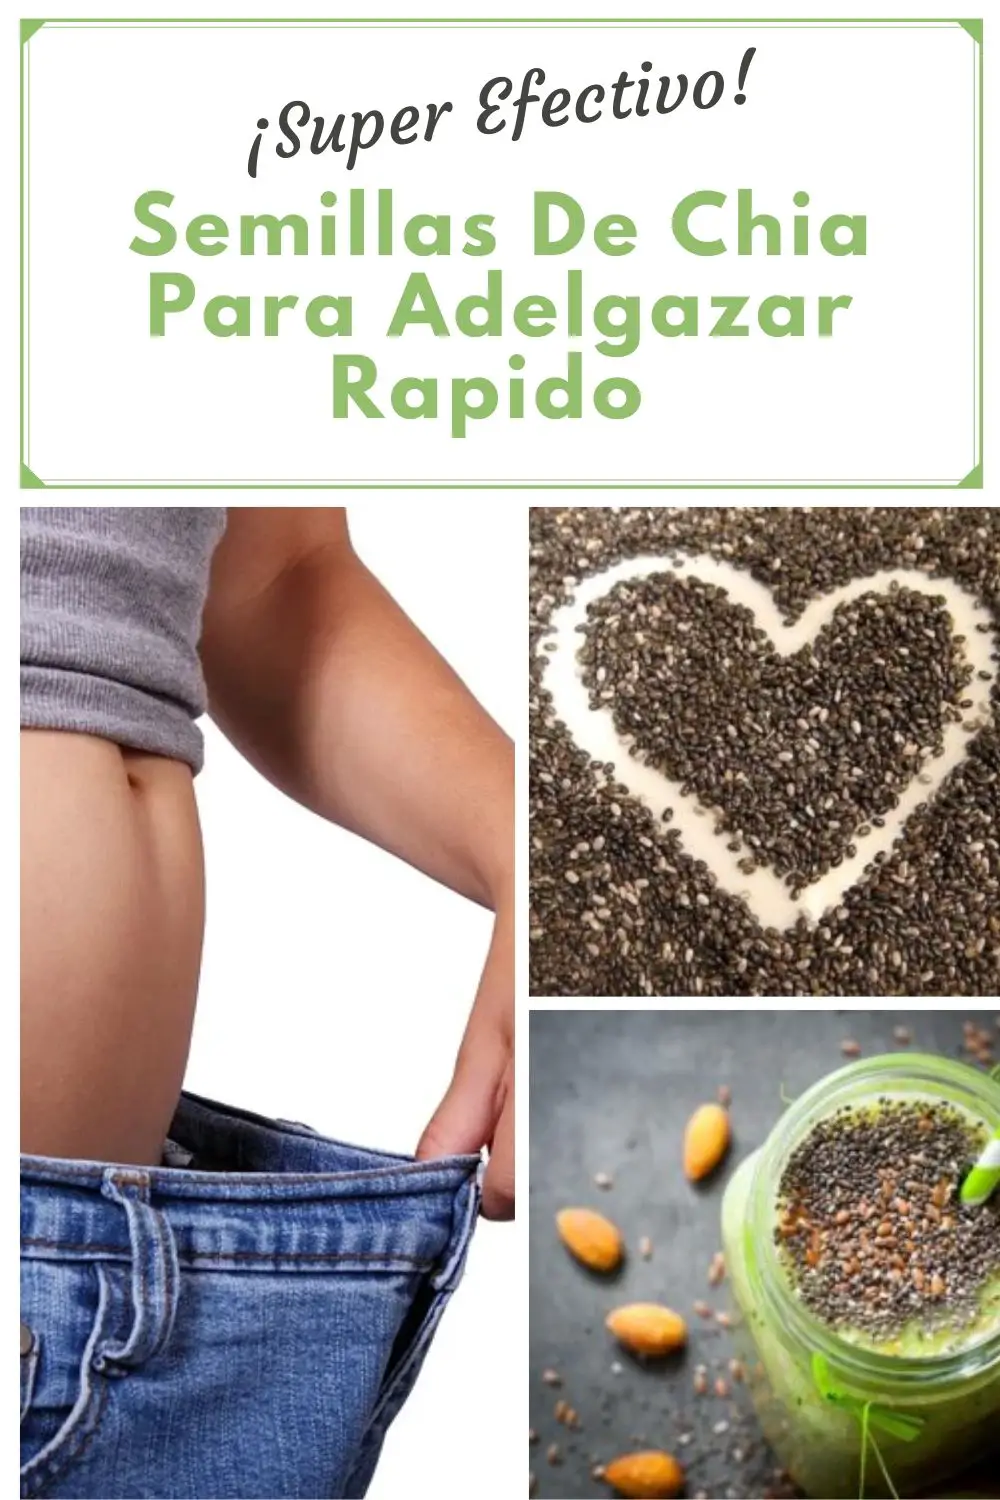 semillas-de-chia-para-adelgazar-rapido-2937825